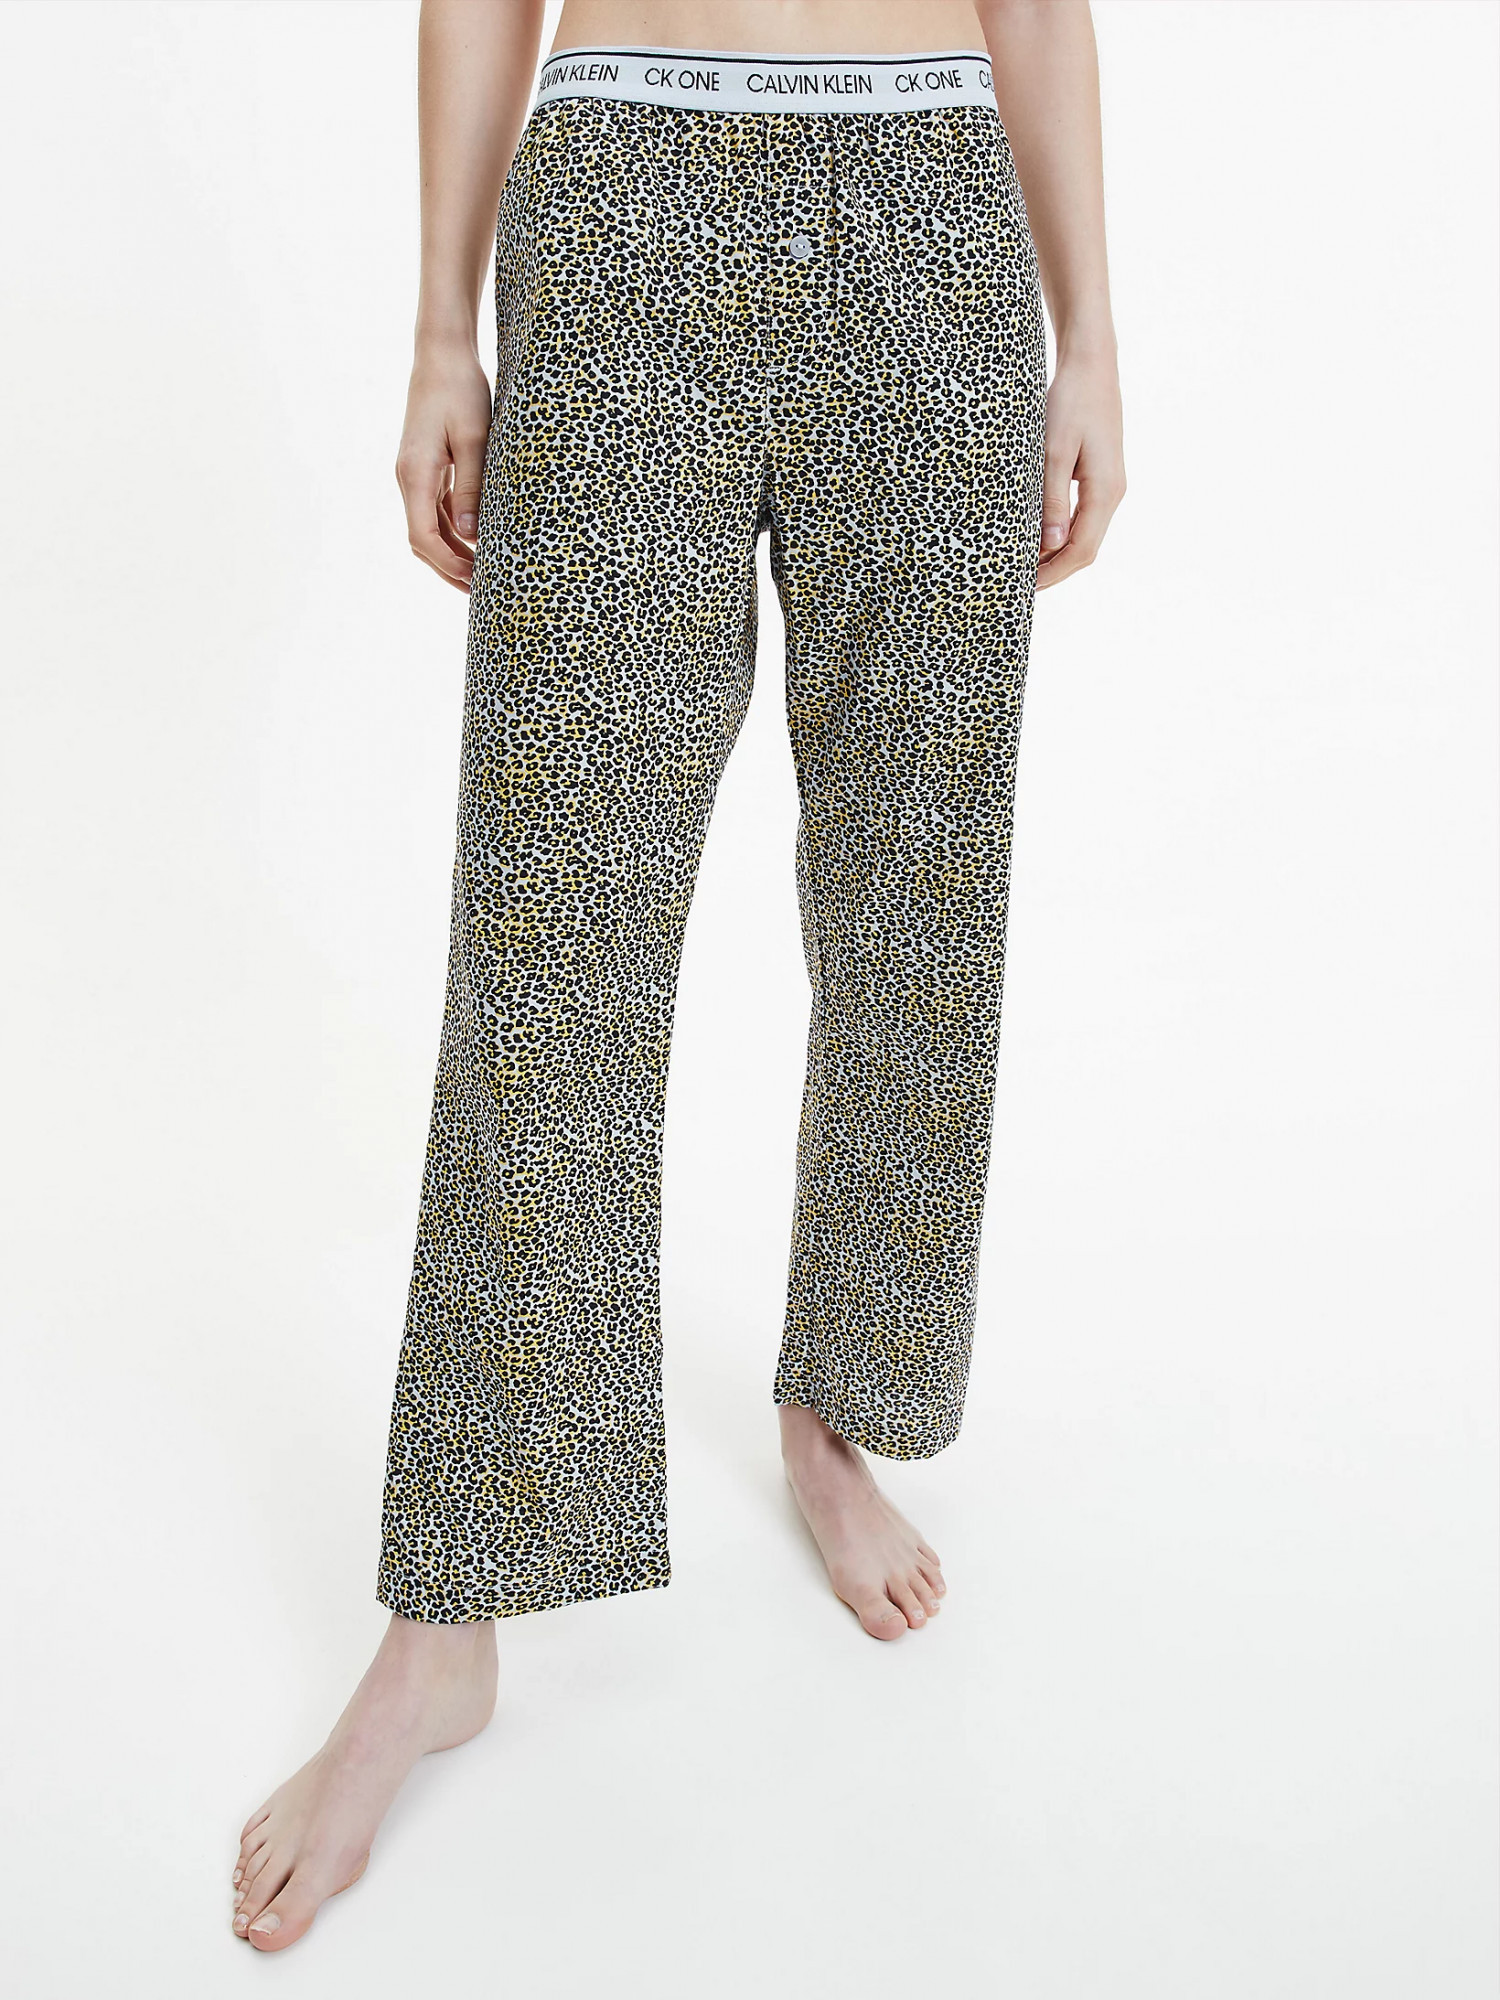 Dámské pyžamové kalhoty QS6433E - V4L Fialová se zvířecím vzorem - Calvin Klein Velikost: S, Barvy: fialová vzor